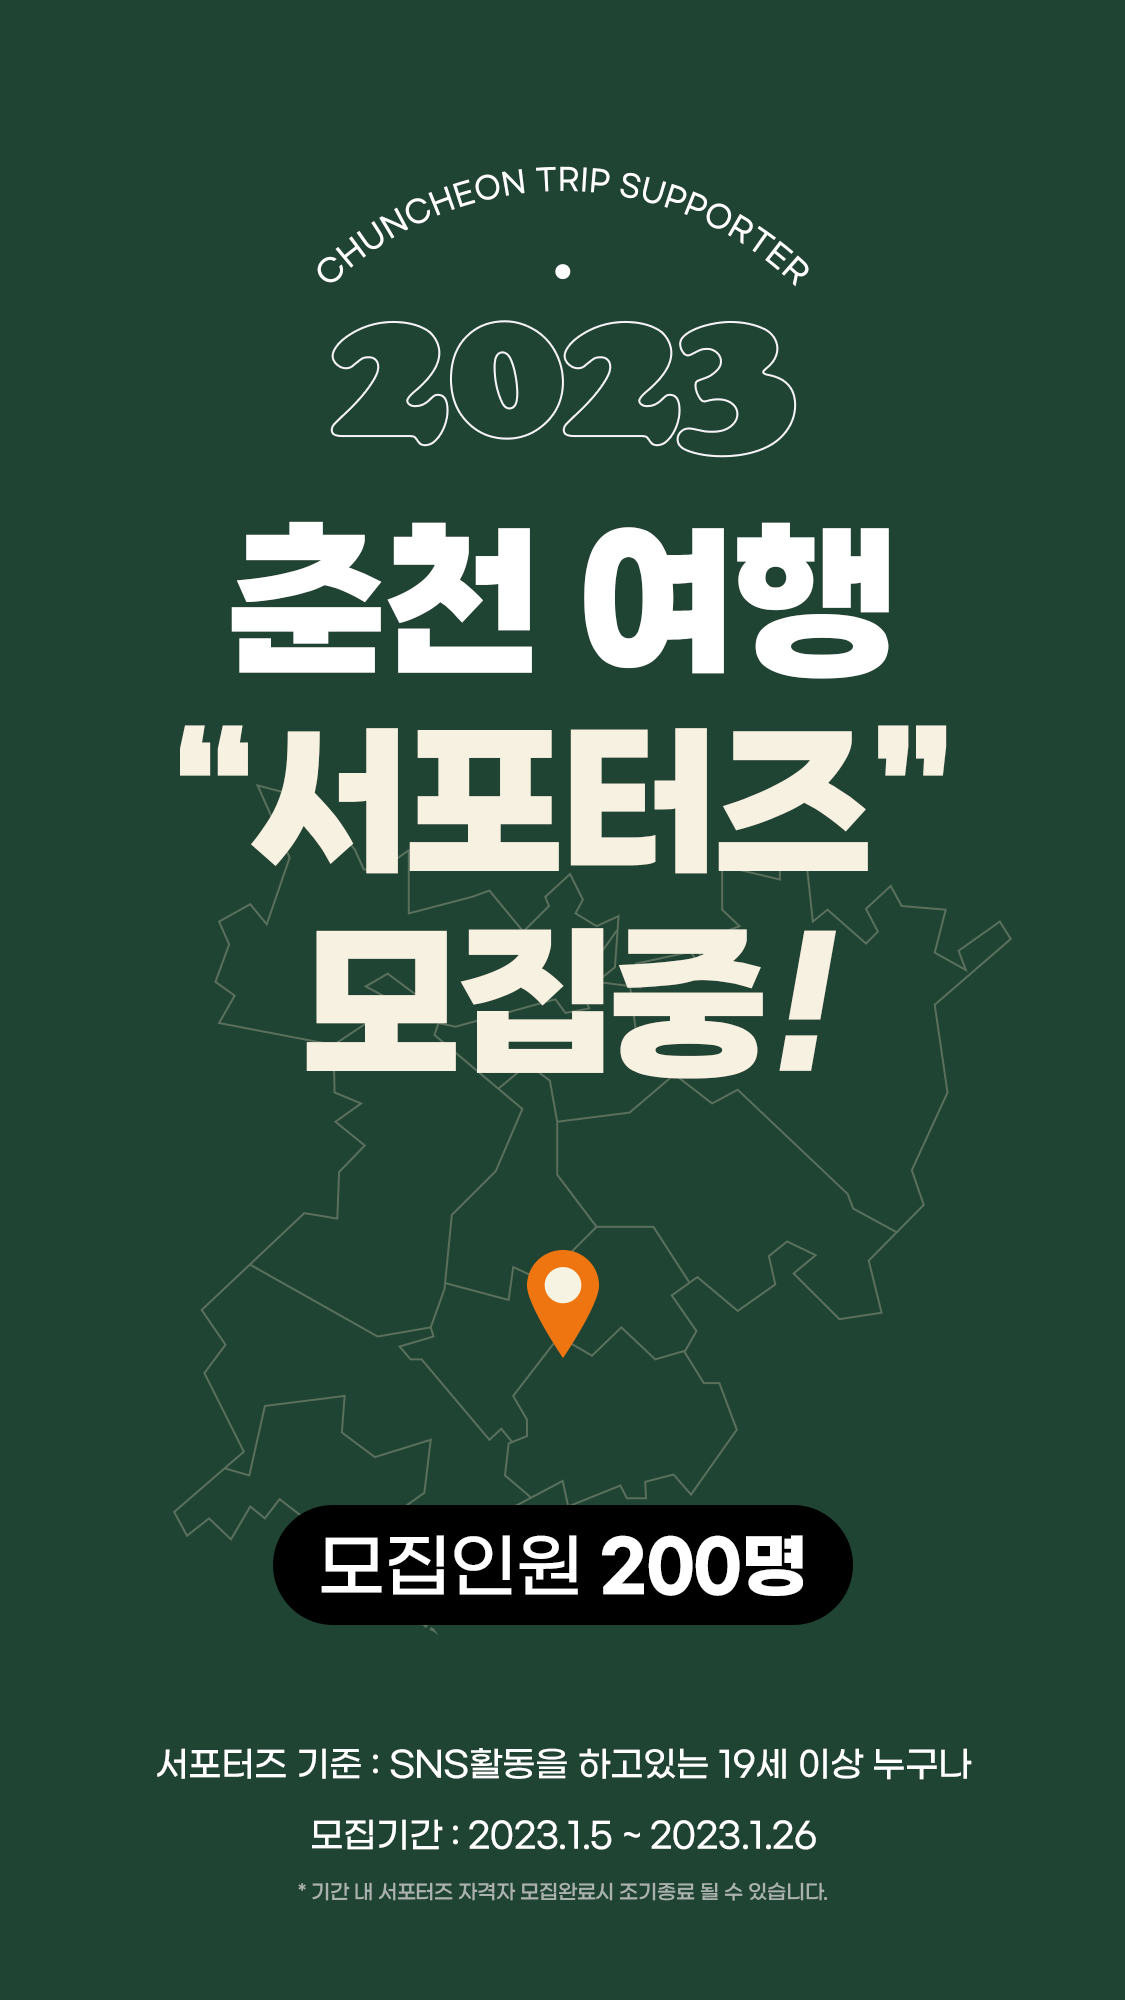 2023 춘천여행 서포터즈 모집